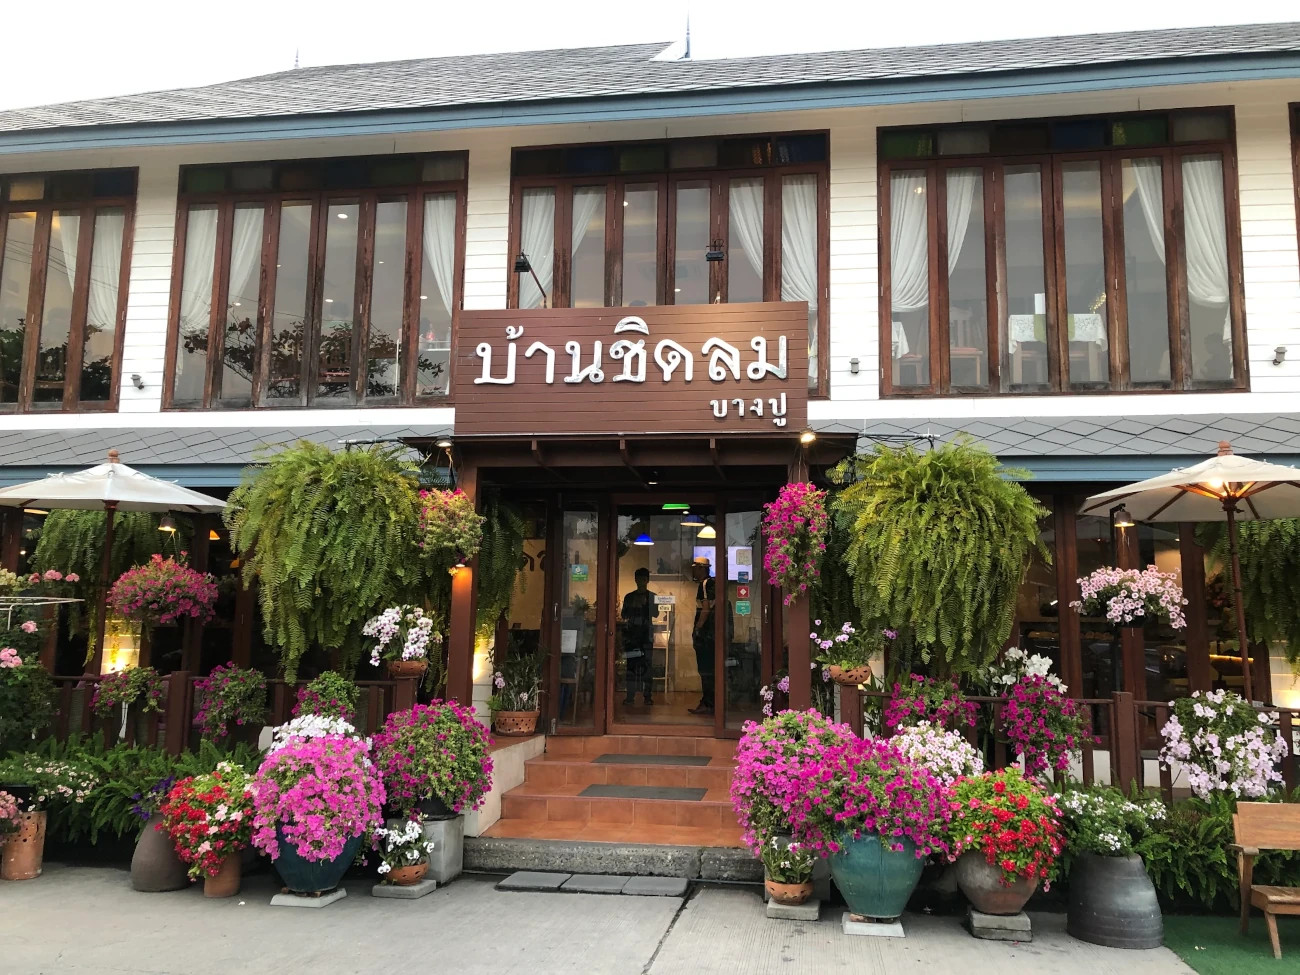 オリジナル商品販売事業・アフロディーテケストスでのビズトリップで訪れたバンコクのレストラン「Baan Chidlom Bangpu」の画像